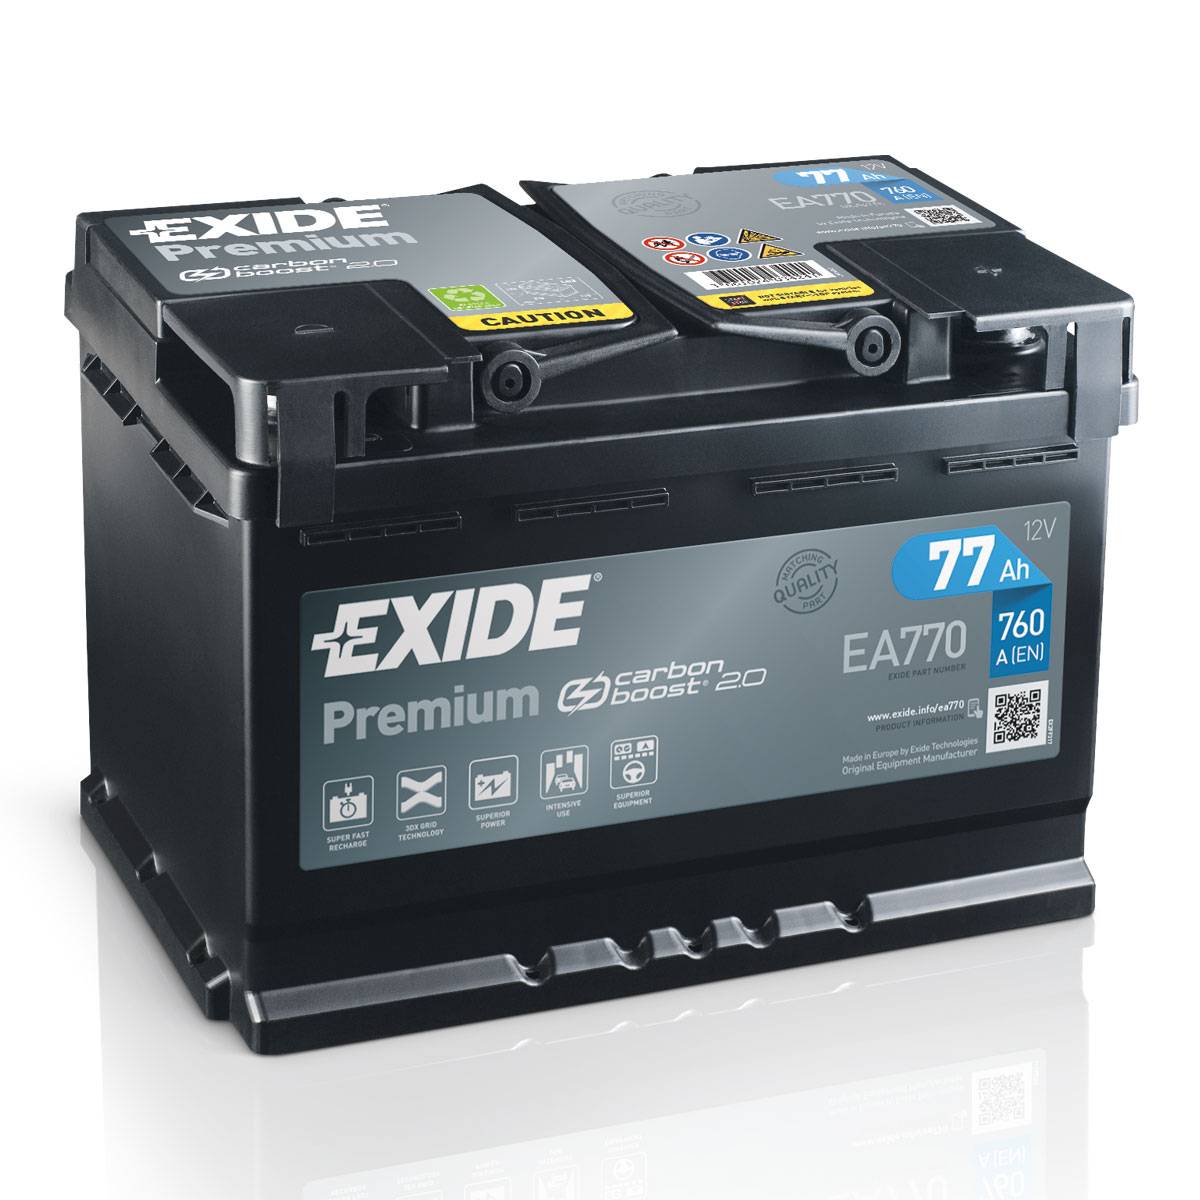 Exide EA770 Premium Carbon Boost 12V 77Ah 760A batteria auto